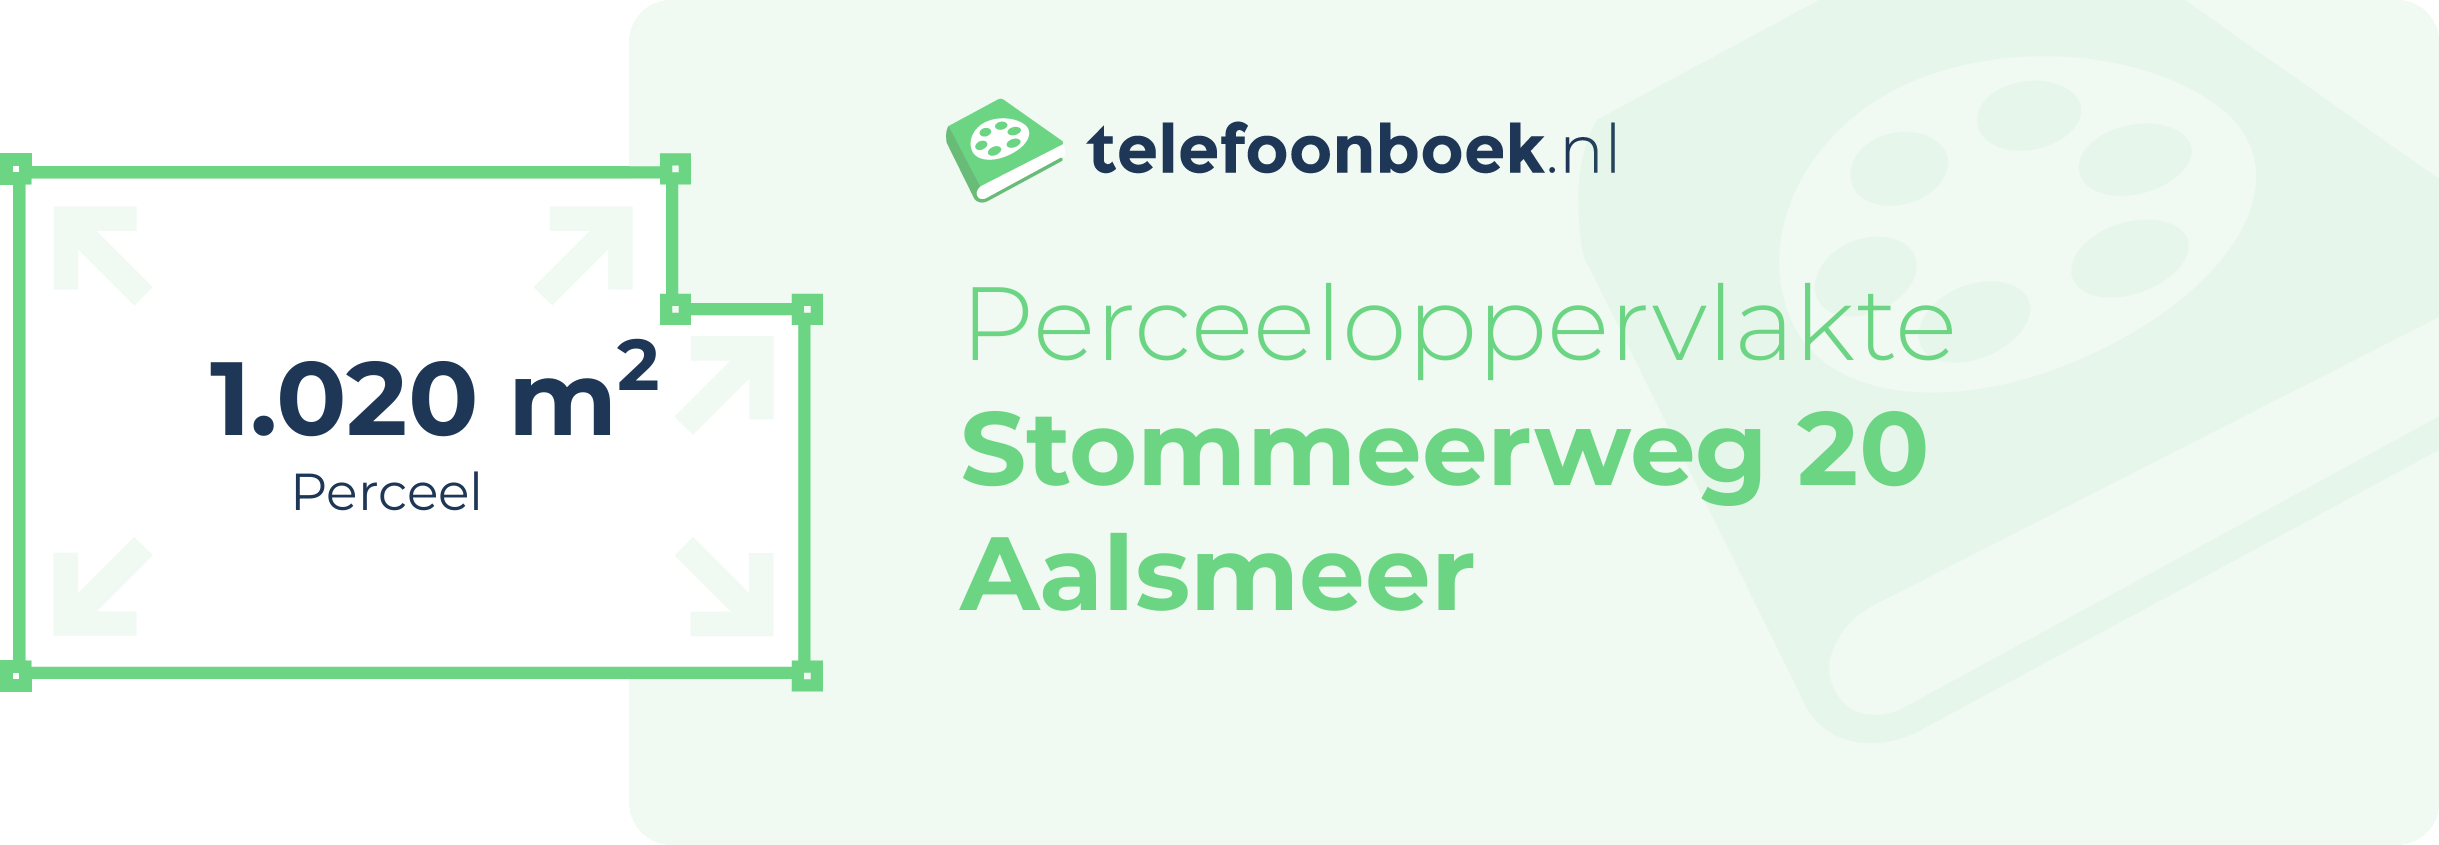 Perceeloppervlakte Stommeerweg 20 Aalsmeer